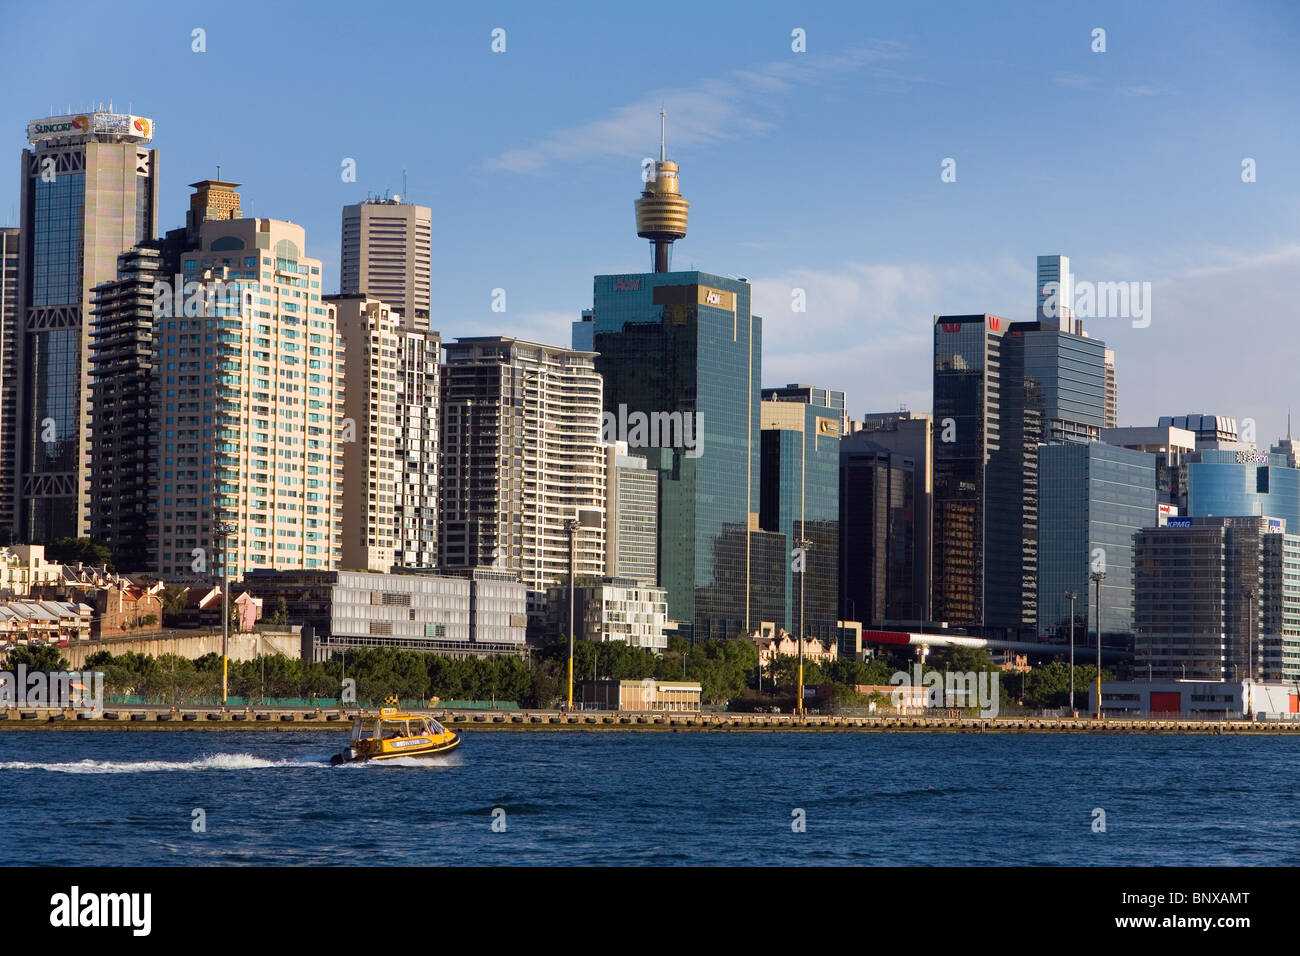 Les tours d'habitation et les immeubles à appartements sur Darling Harbour avec les toits de la ville. Sydney, New South Wales, Australia Banque D'Images